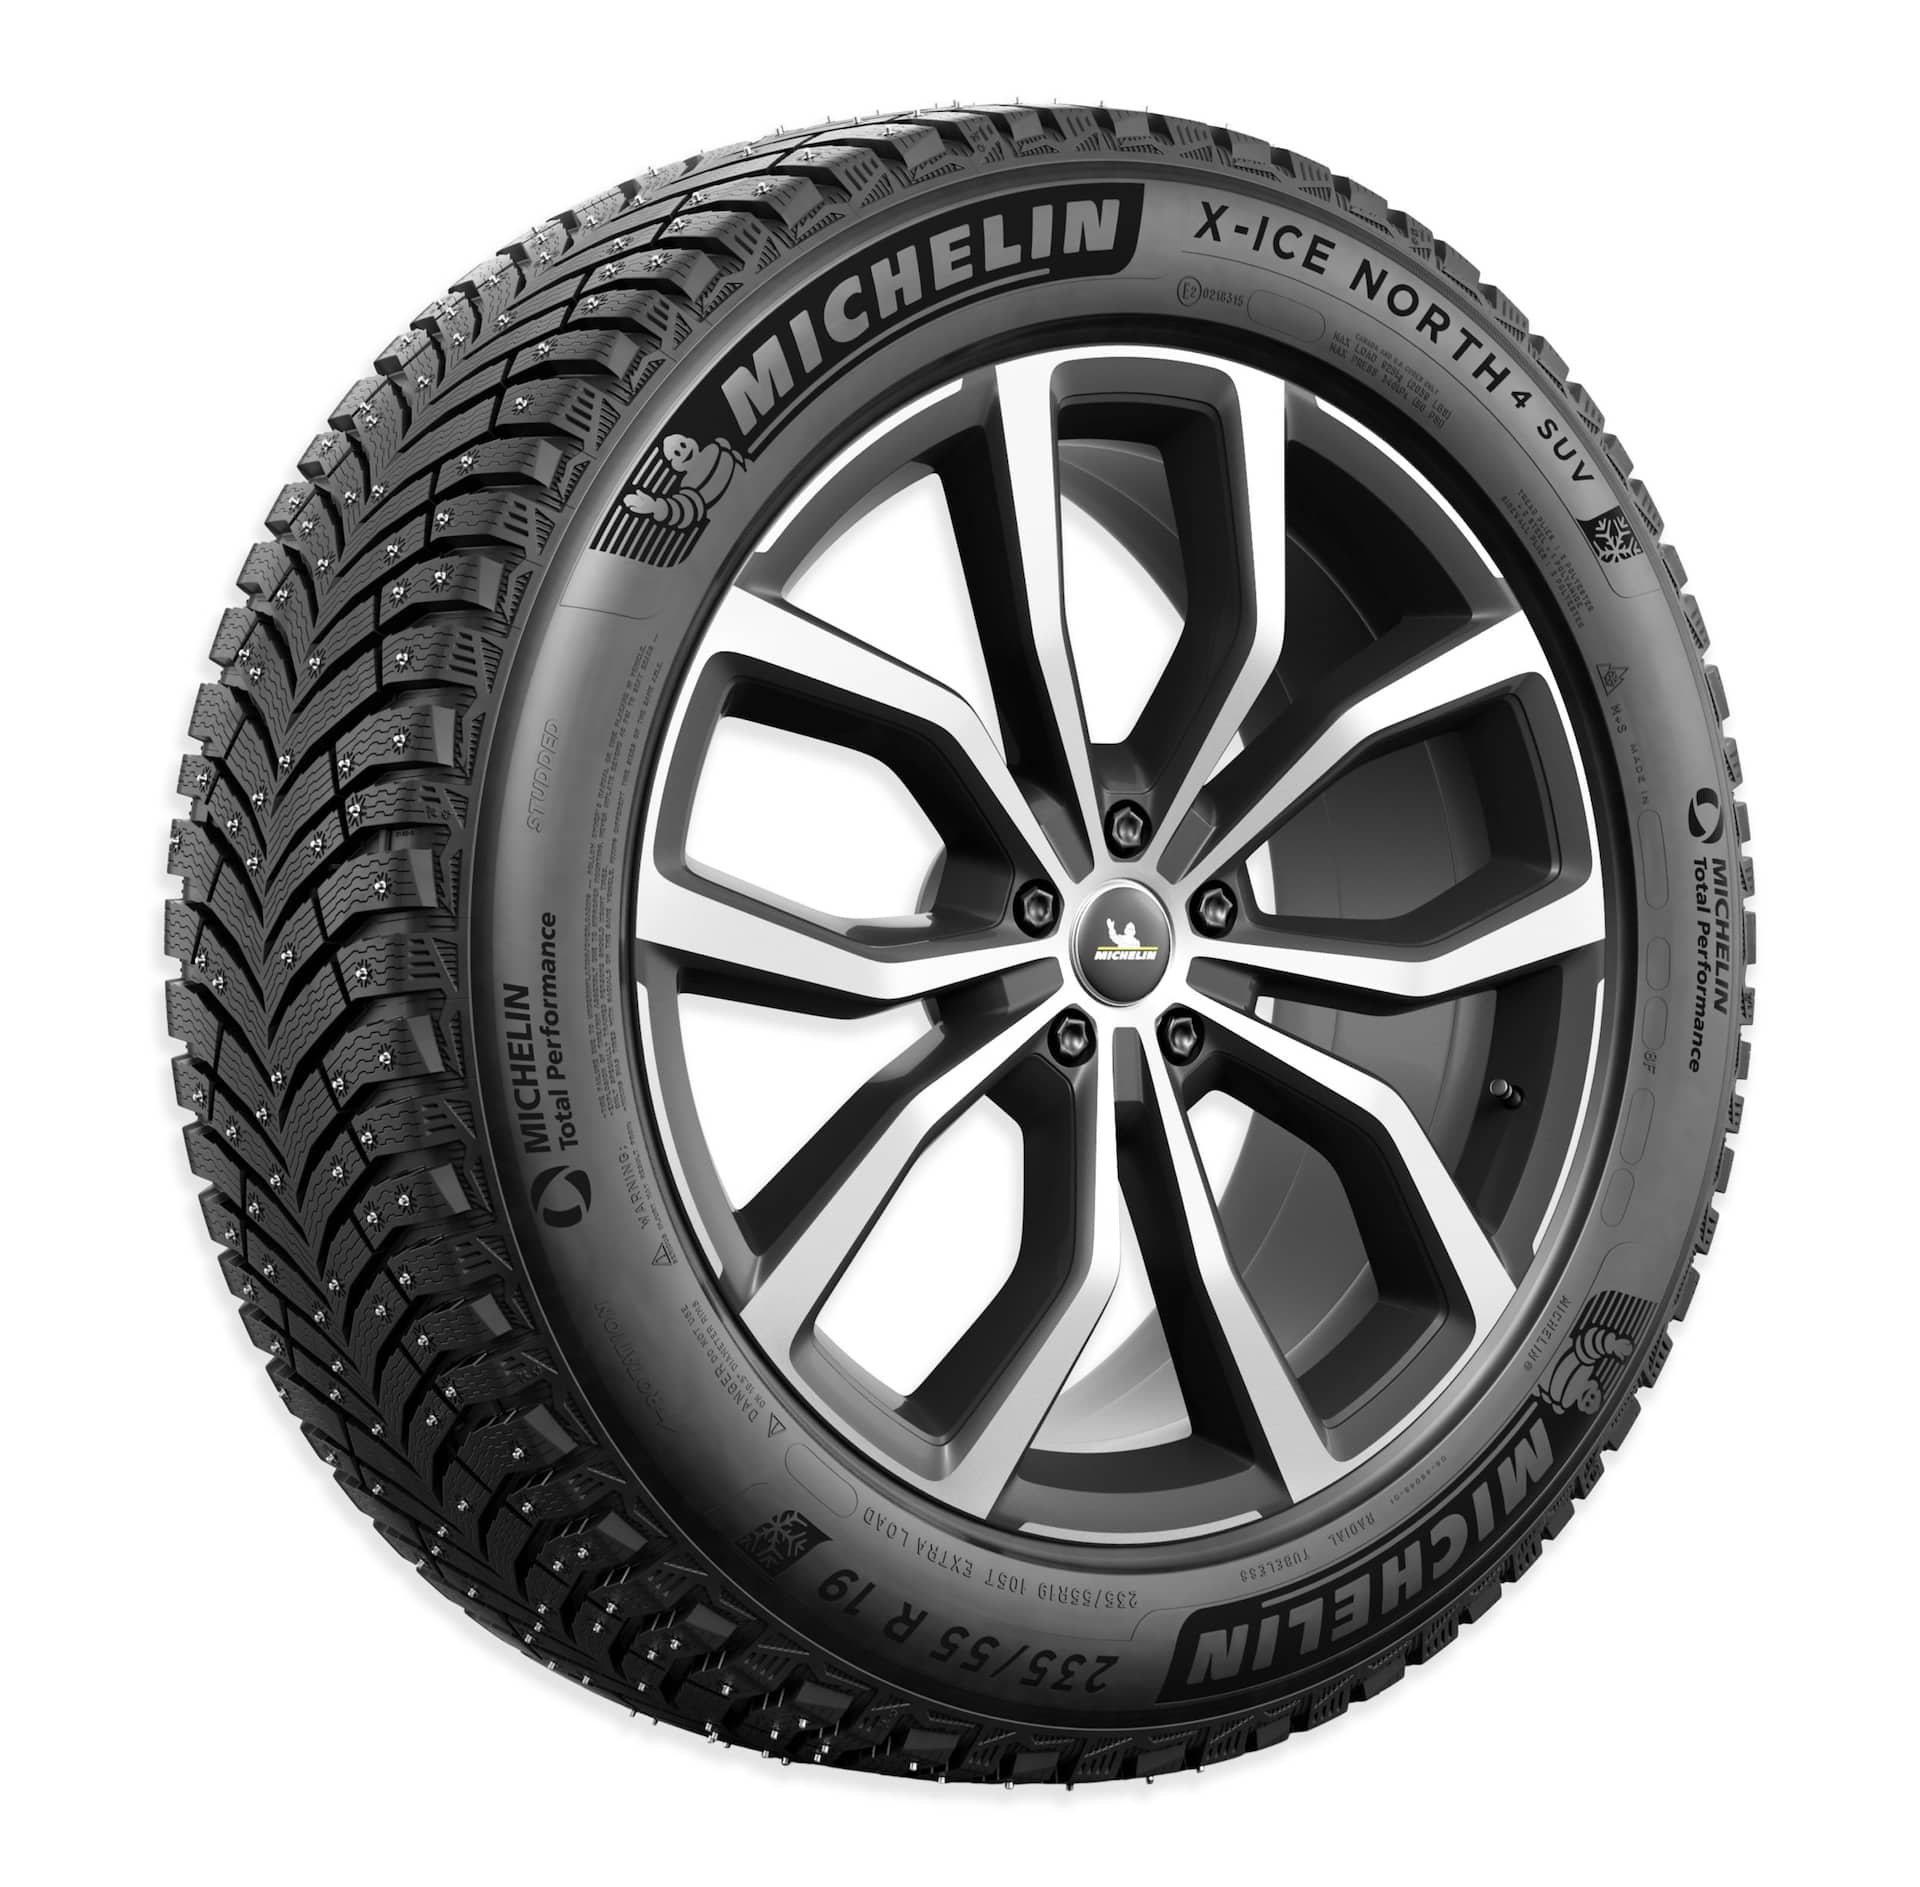 Michelin X-Ice® SNOW SUV Winter Tire For Passenger & CUV